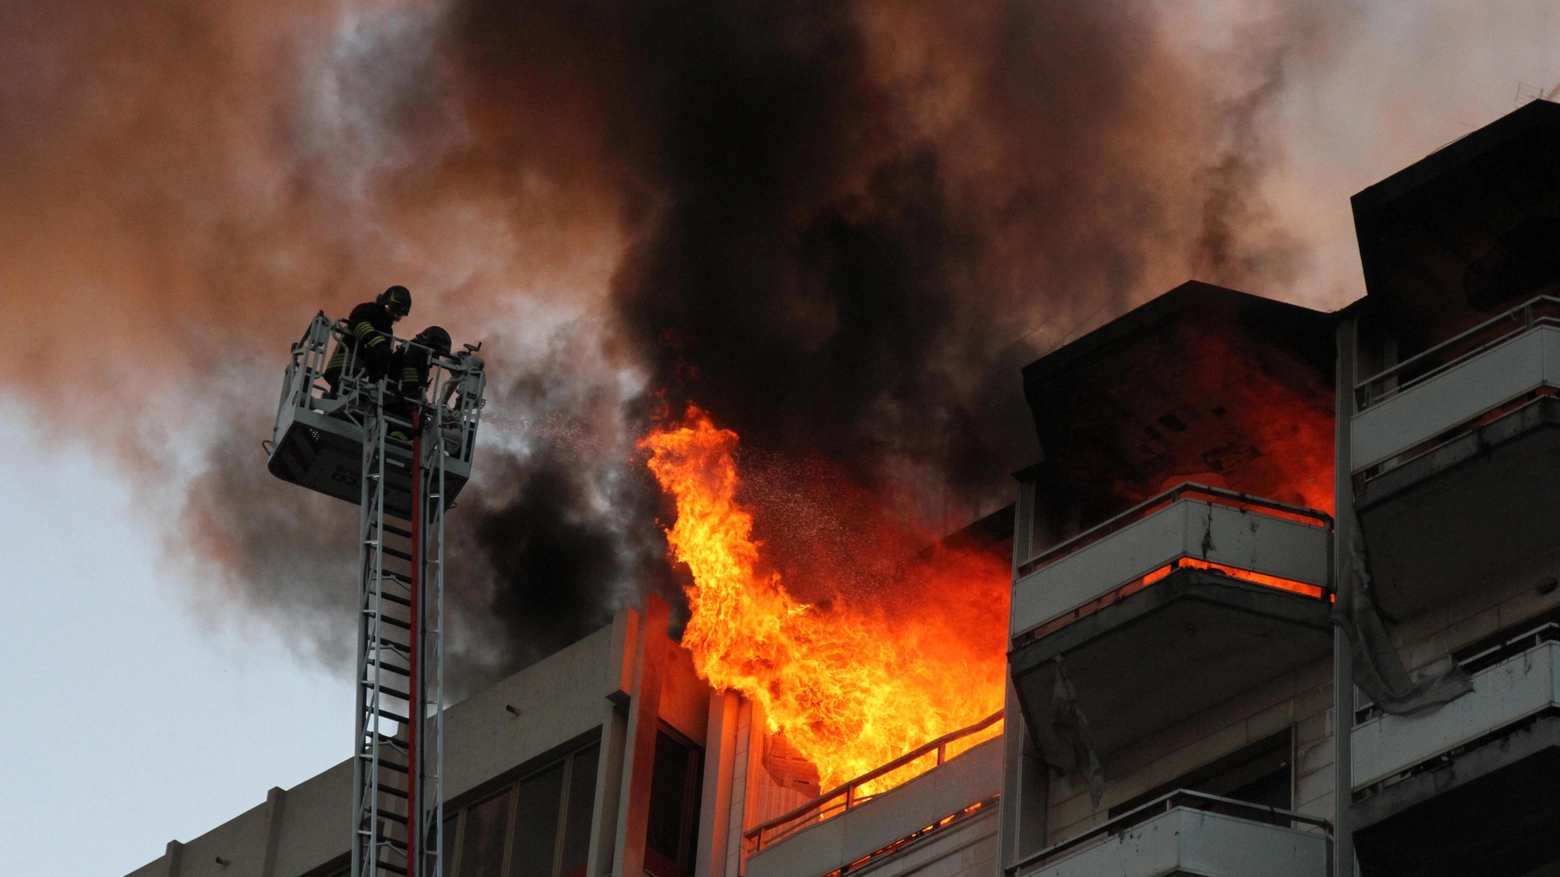 Incendio, intervento dei vigili del fuoco (immagini di repertorio)